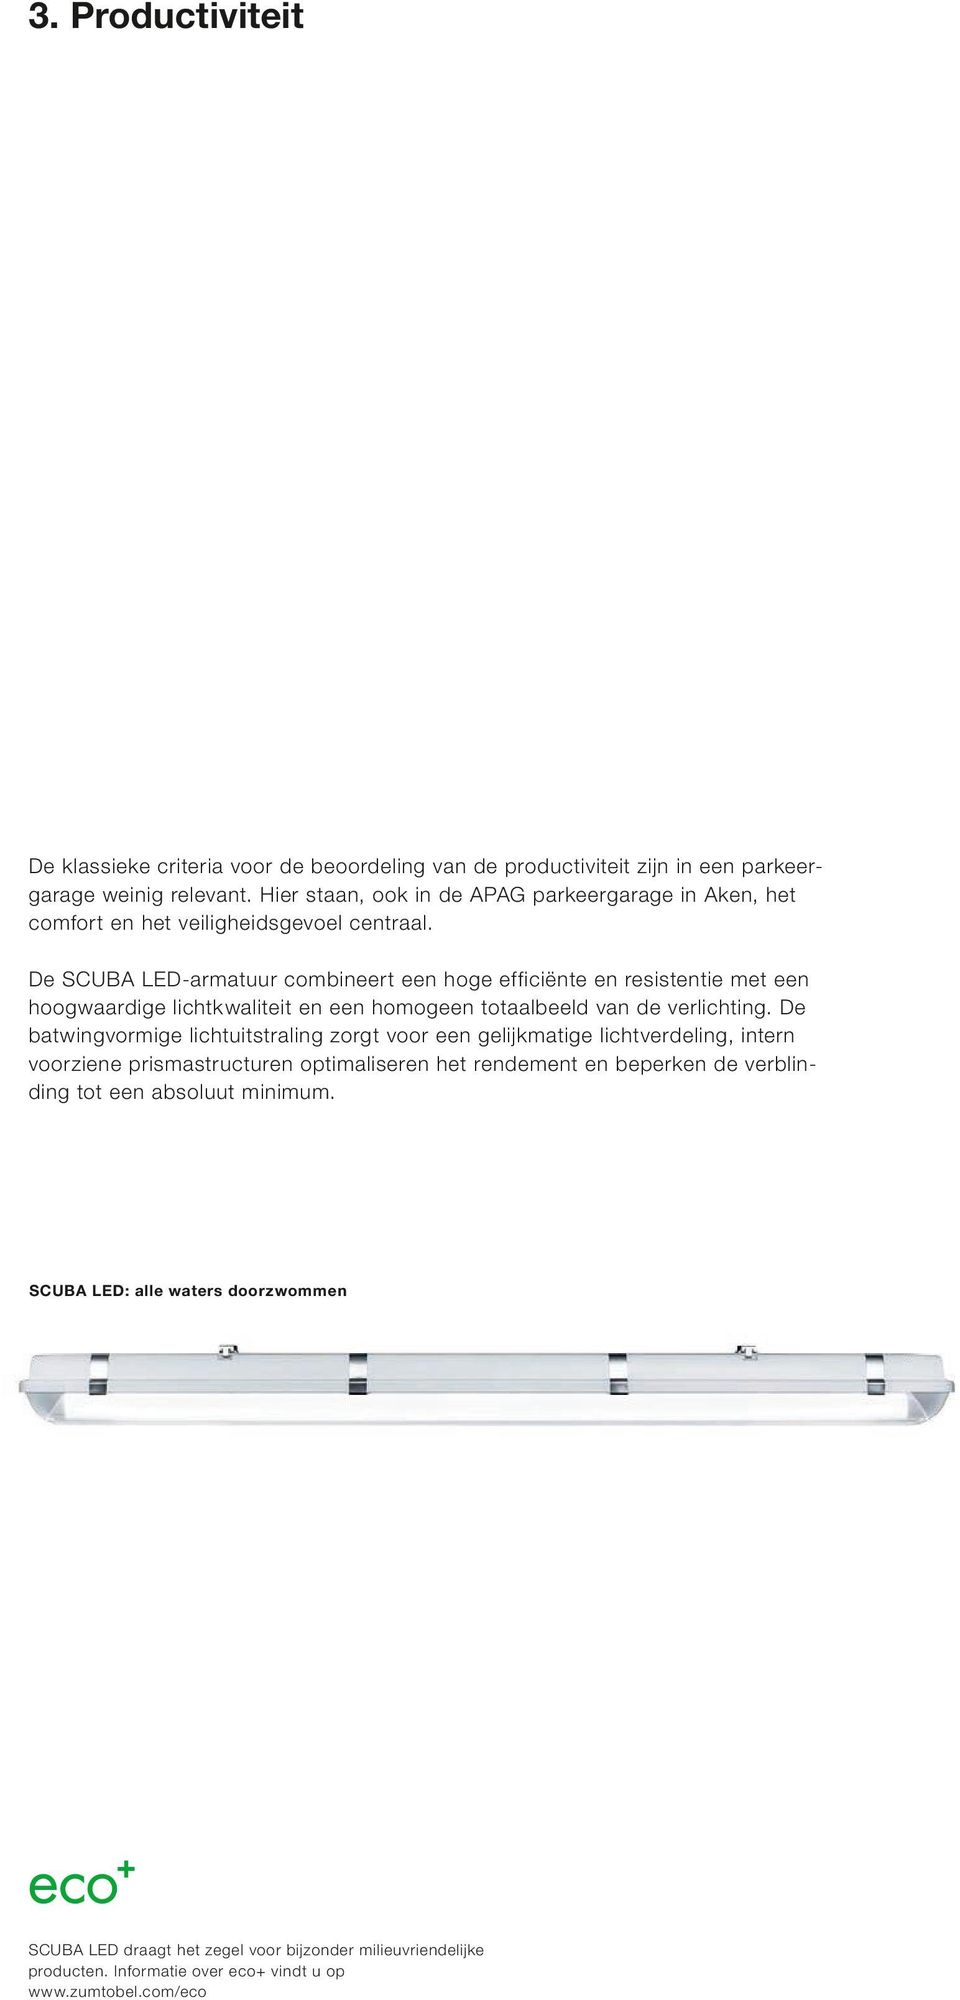 De SCUBA LED-armatuur combineert een hoge efficiënte en resistentie met een hoogwaardige lichtkwaliteit en een homogeen totaalbeeld van de verlichting.